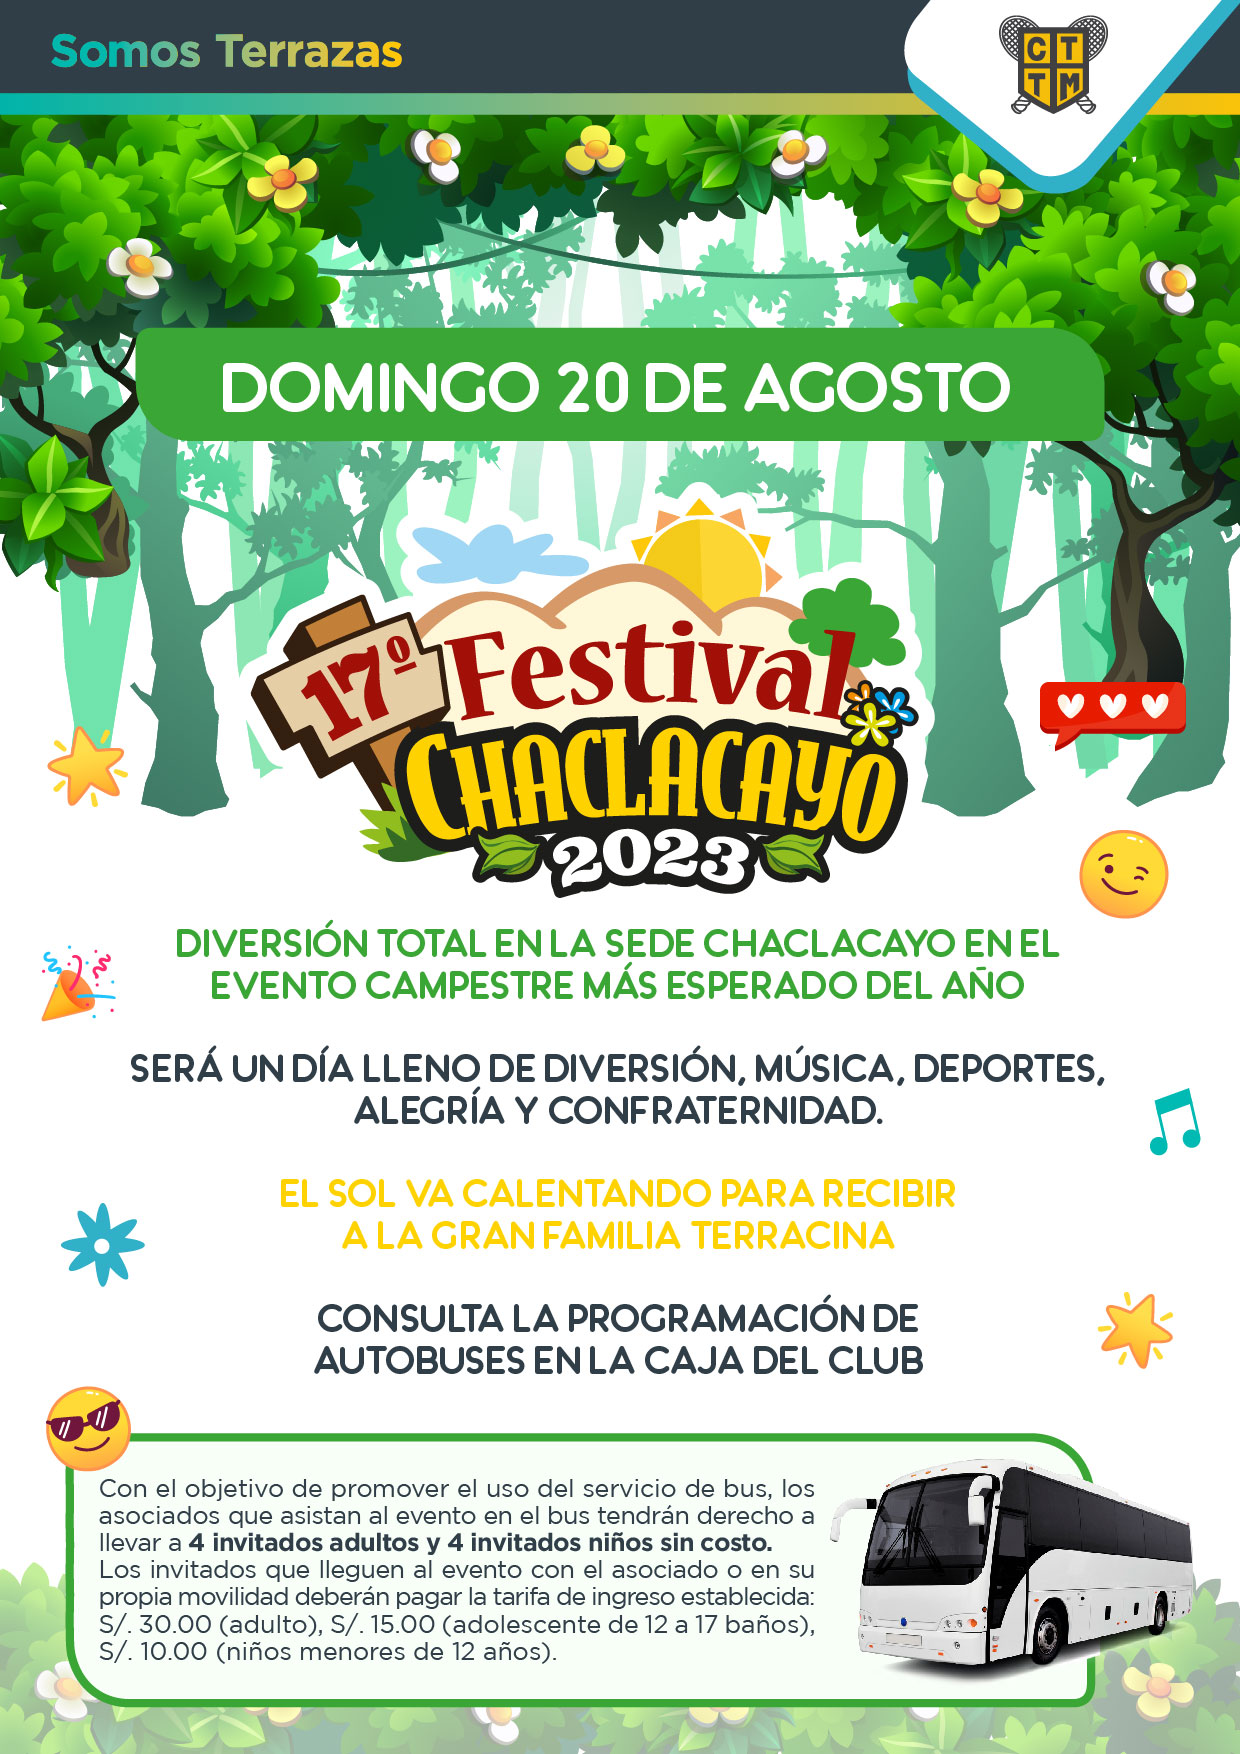 ESTE DOMINGO 20 DE AGOSTO... ¡FESTIVAL CHACLACAYO 2023!